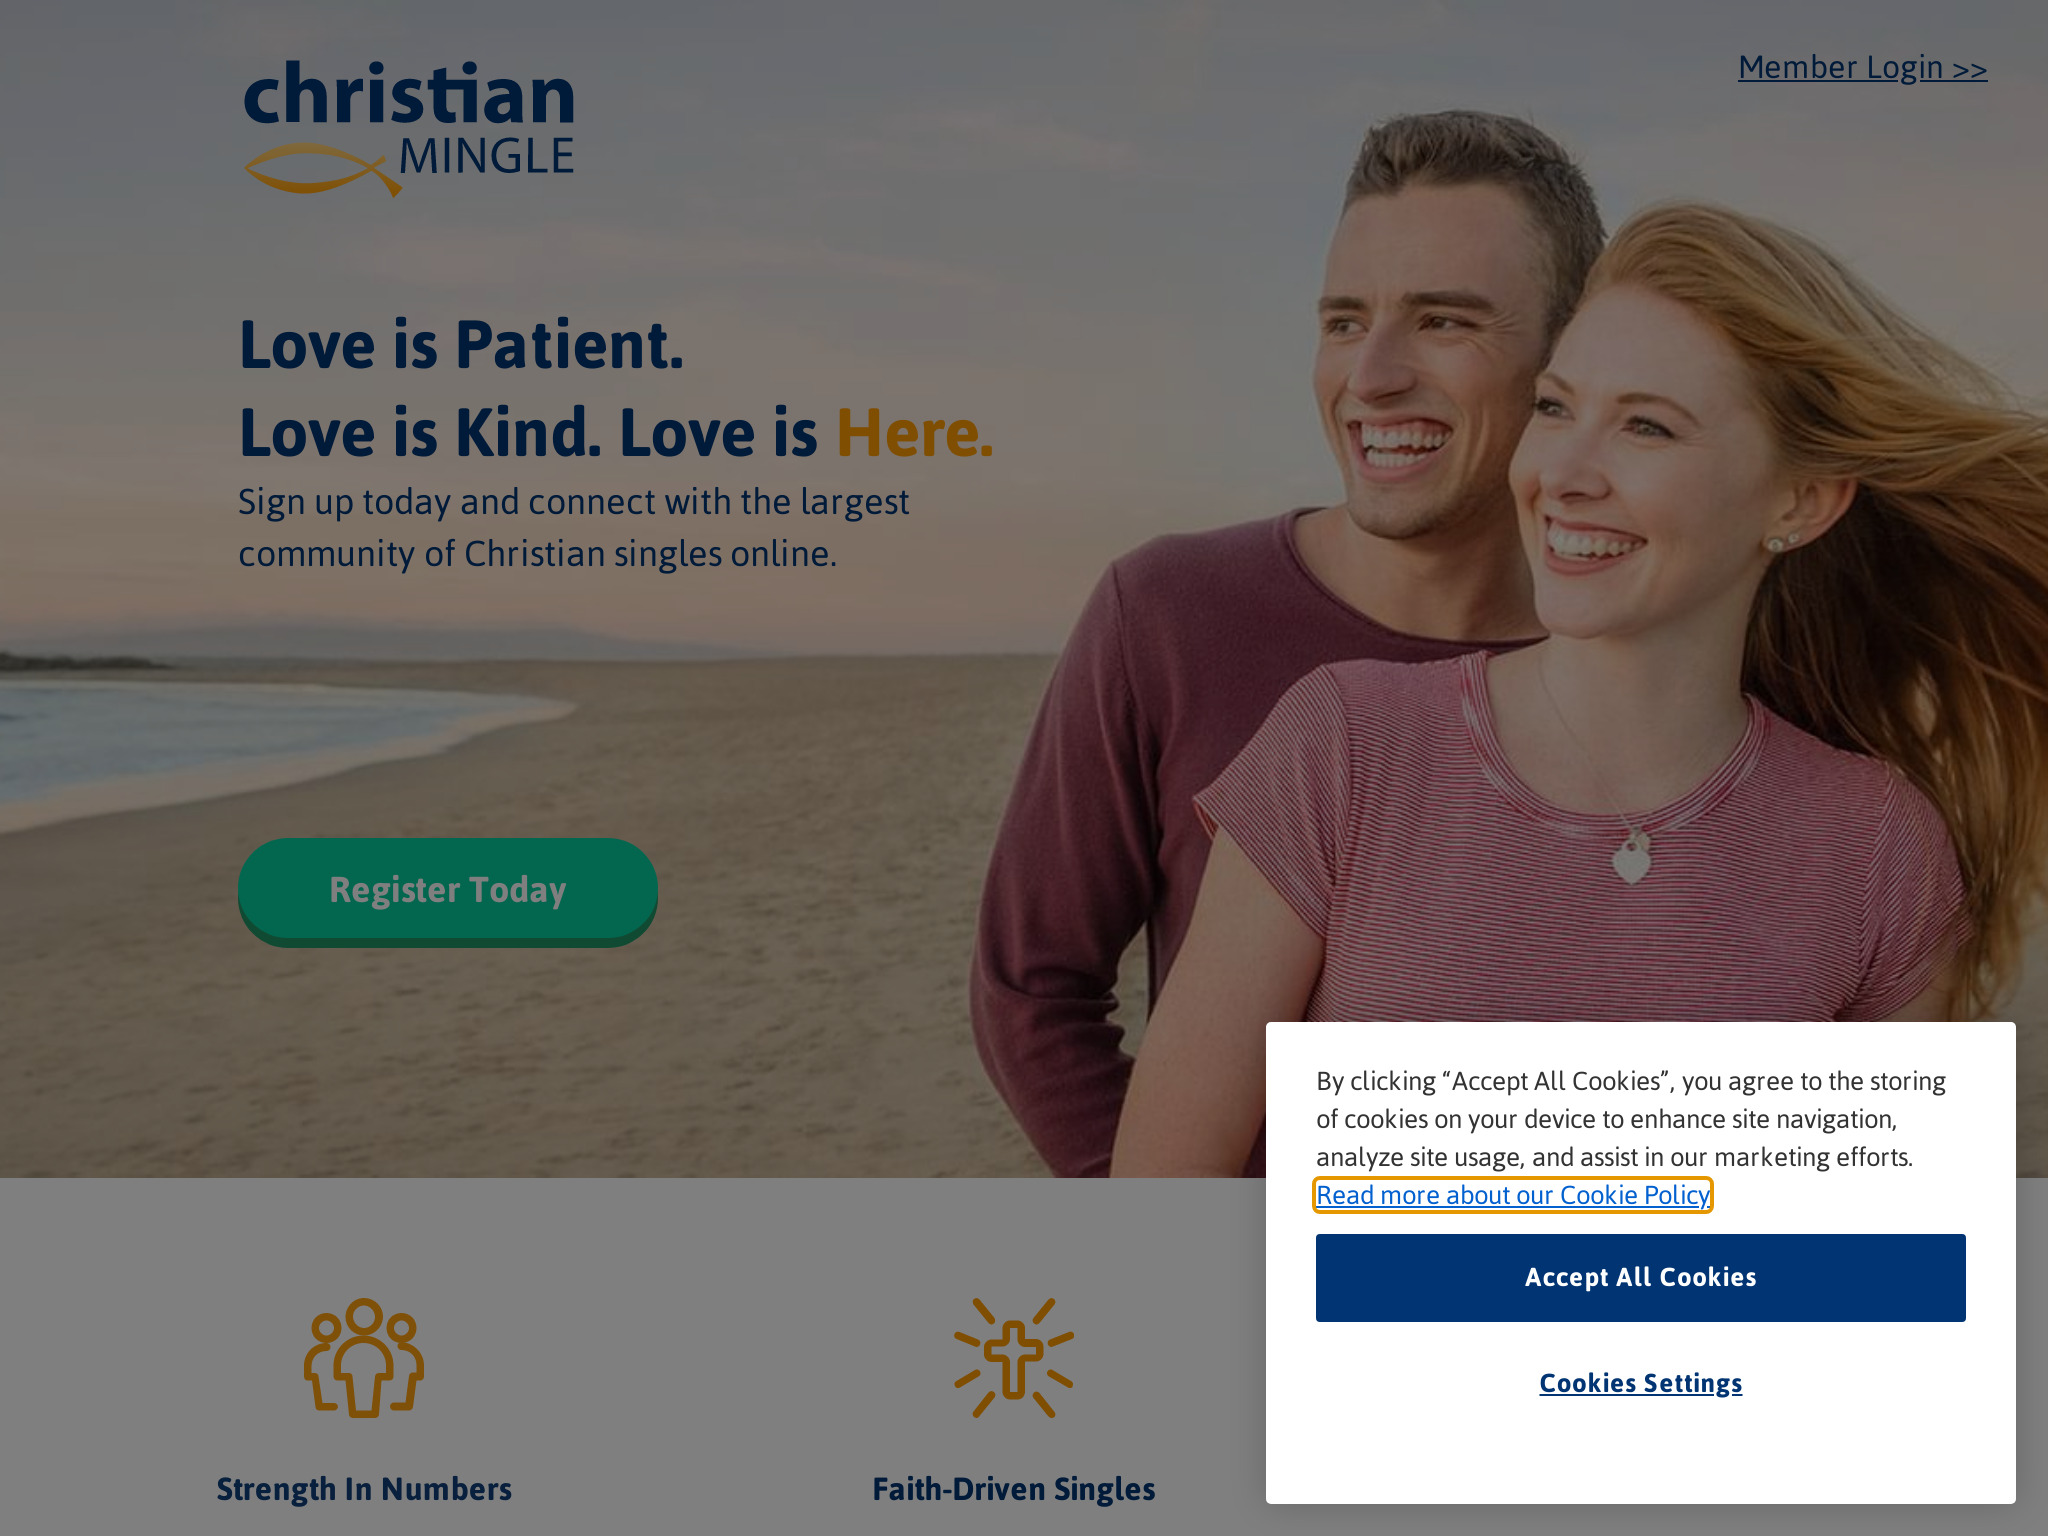 ChristianMingle Review: Ein genauerer Blick auf die beliebte Online-Dating-Plattform